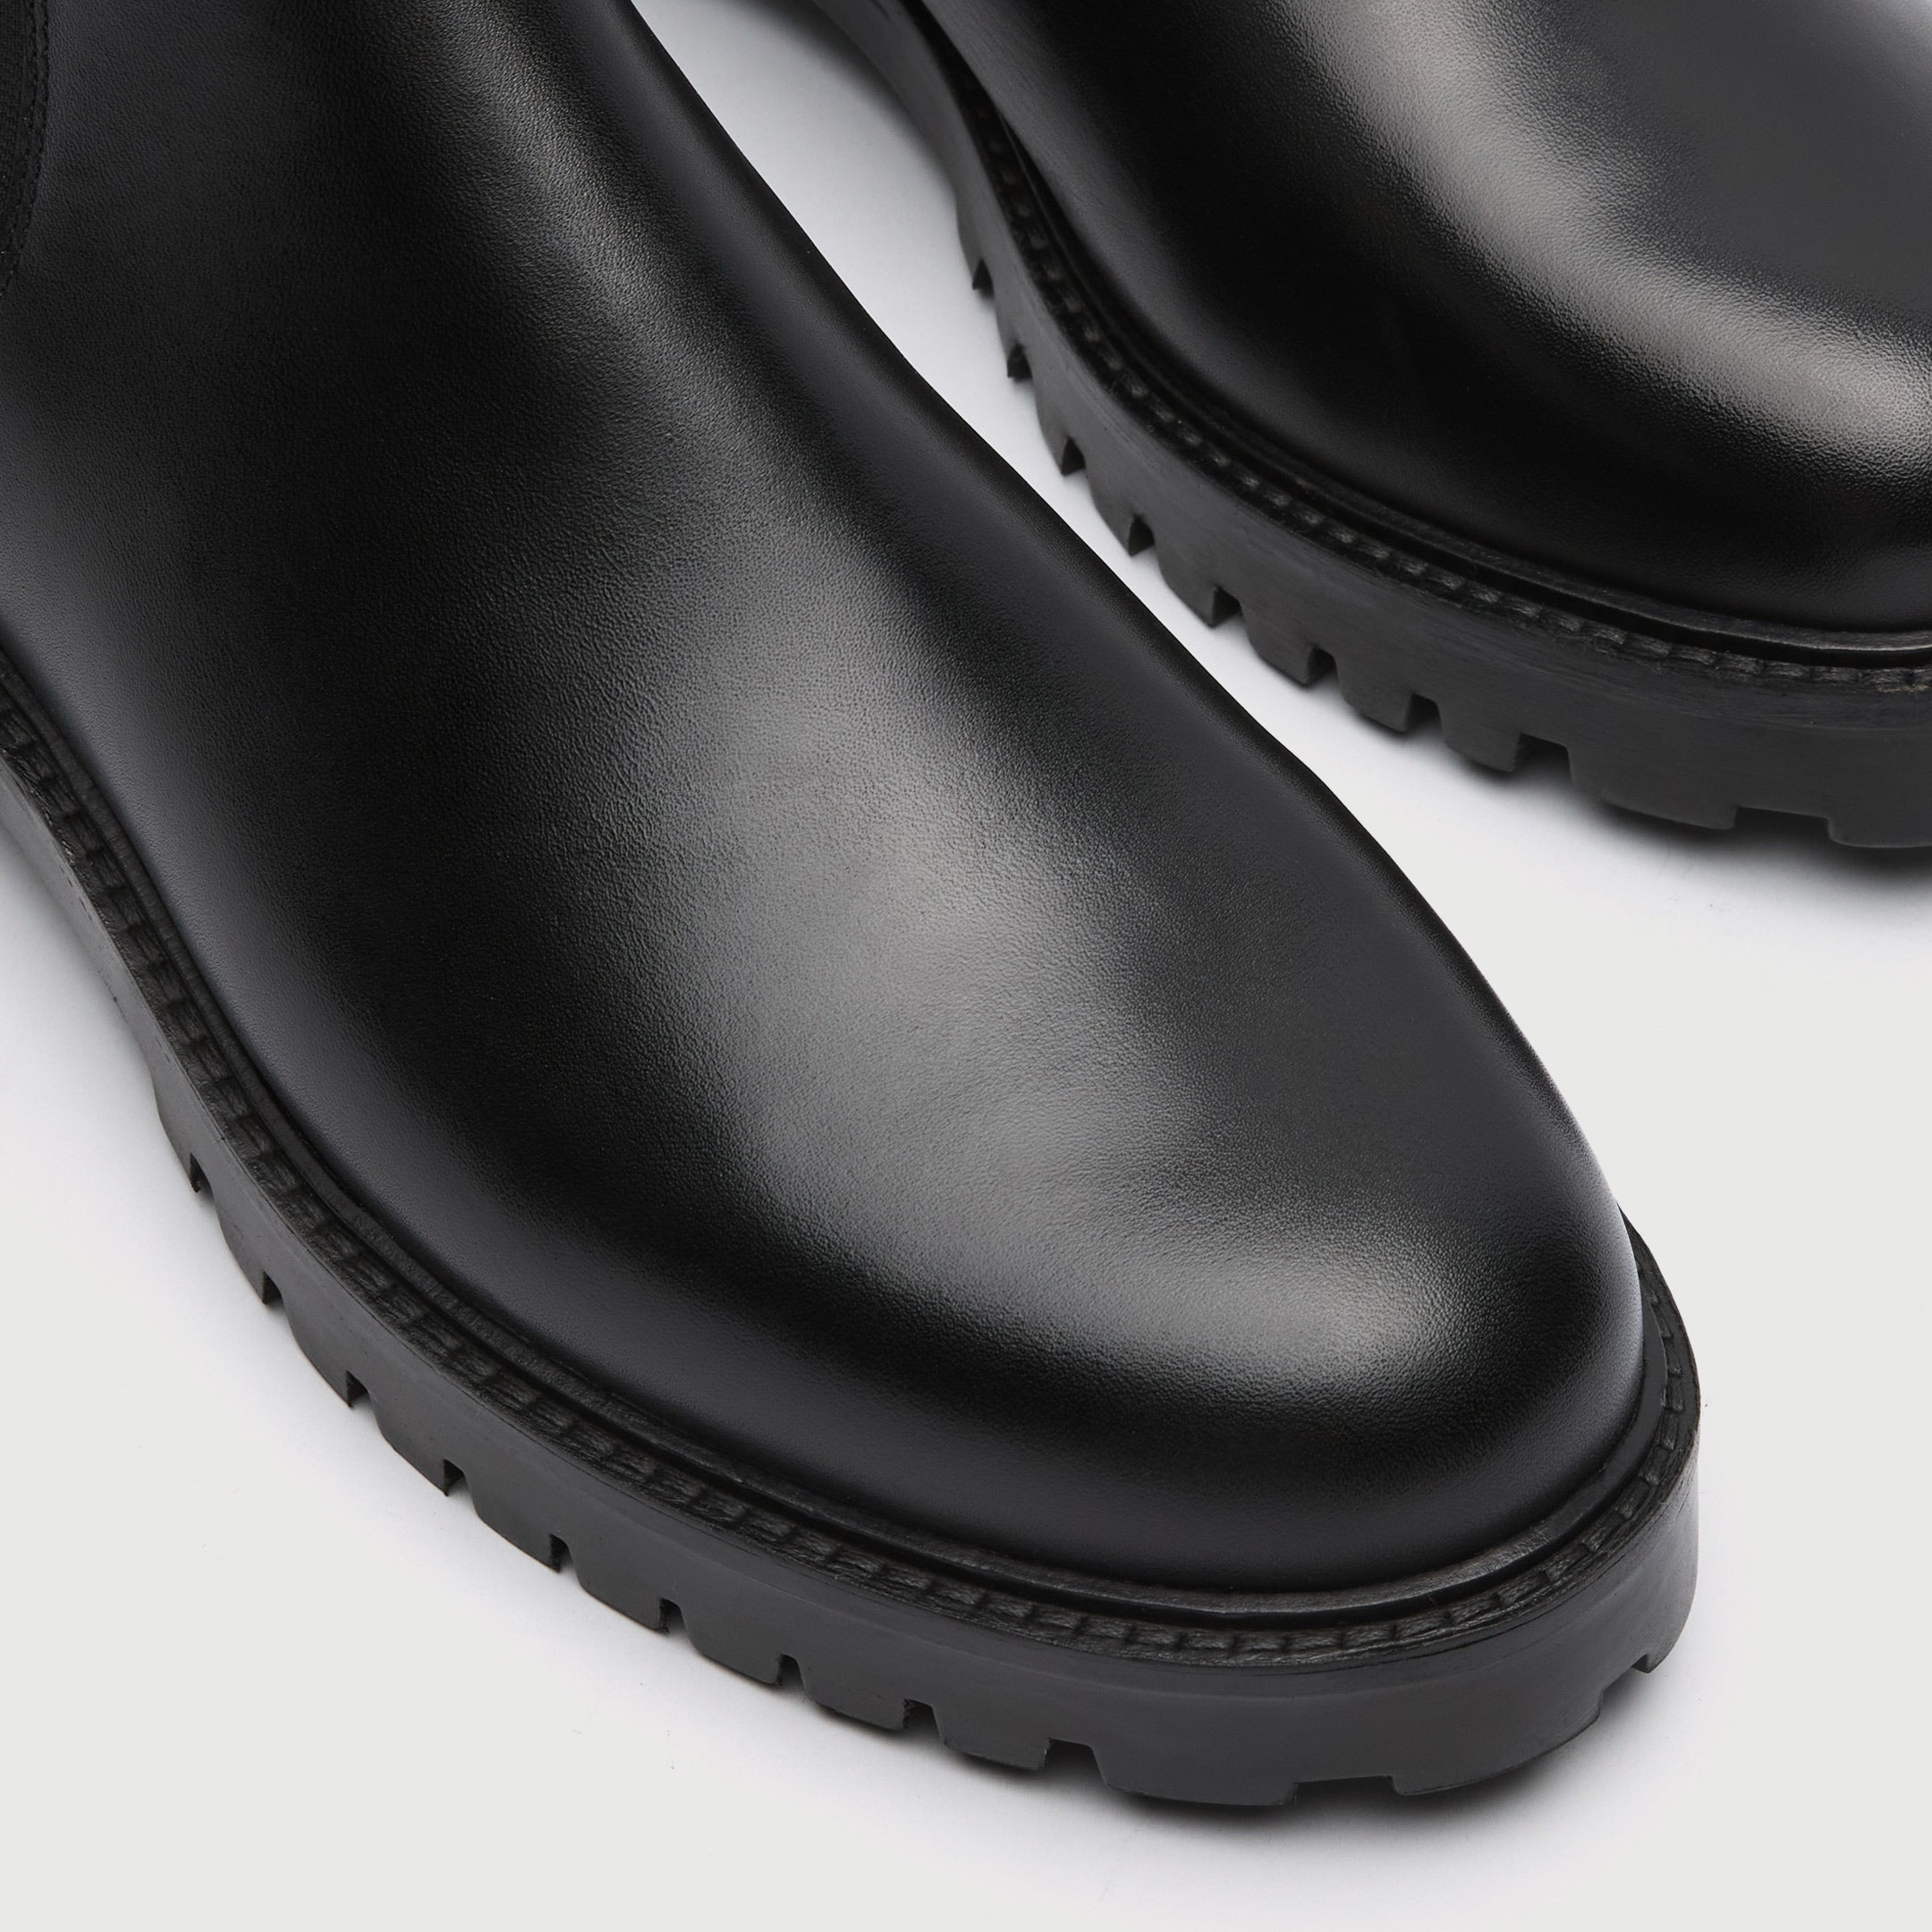 WALK London Men's Sean Chelsea Boot in Black Leather